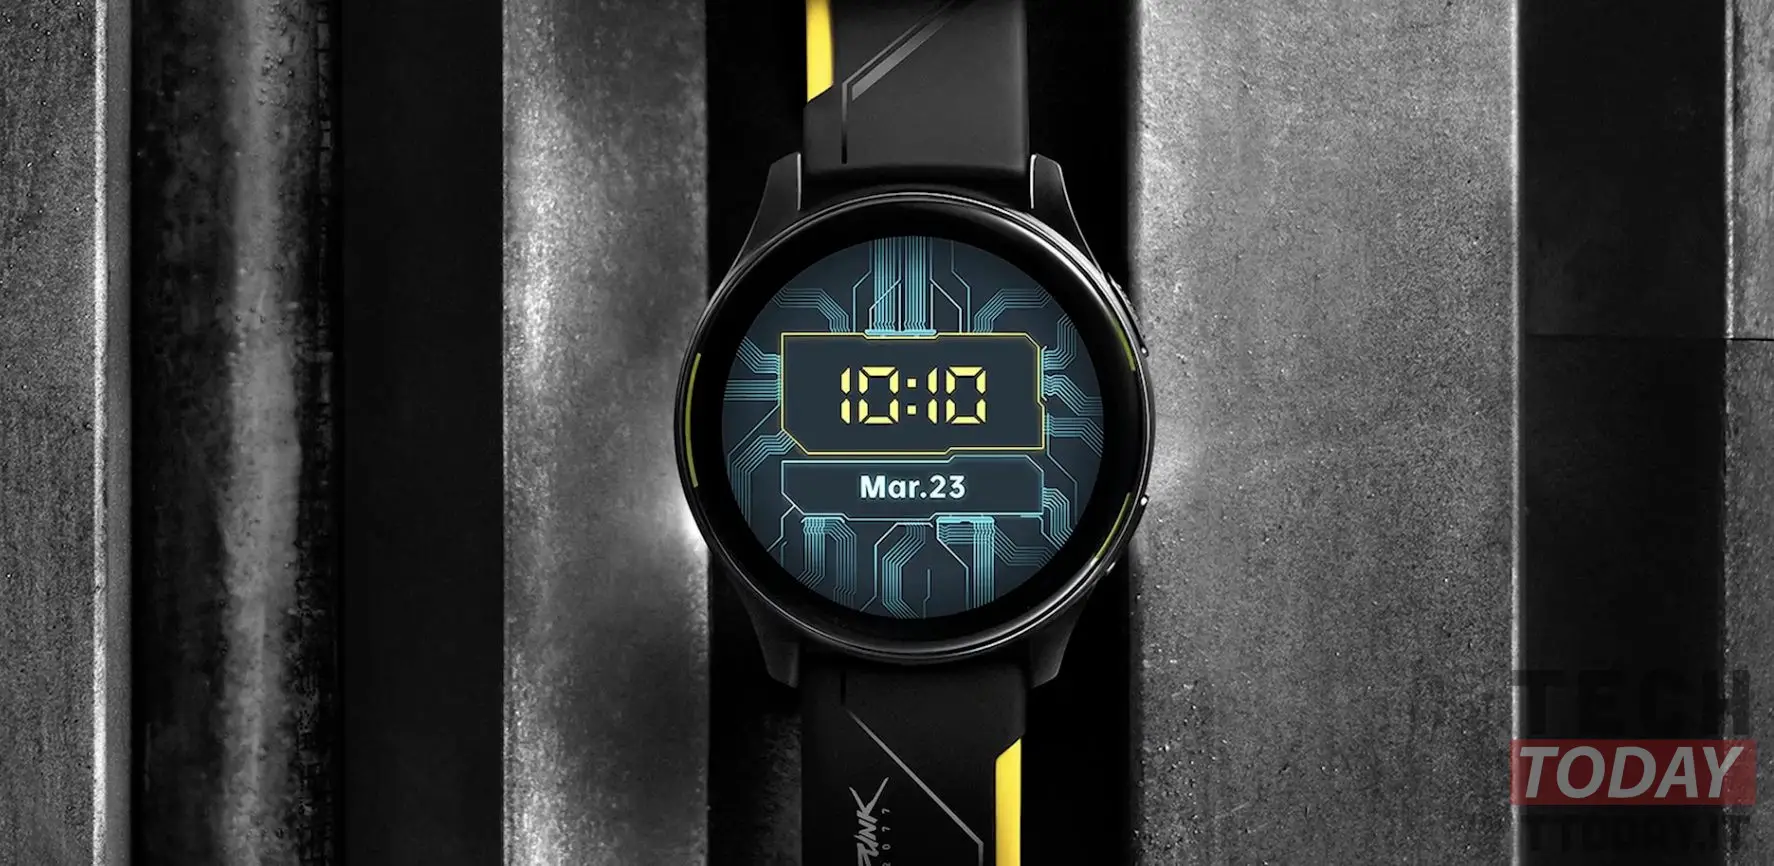 ρολόι oneplus cyberpunk έκδοση